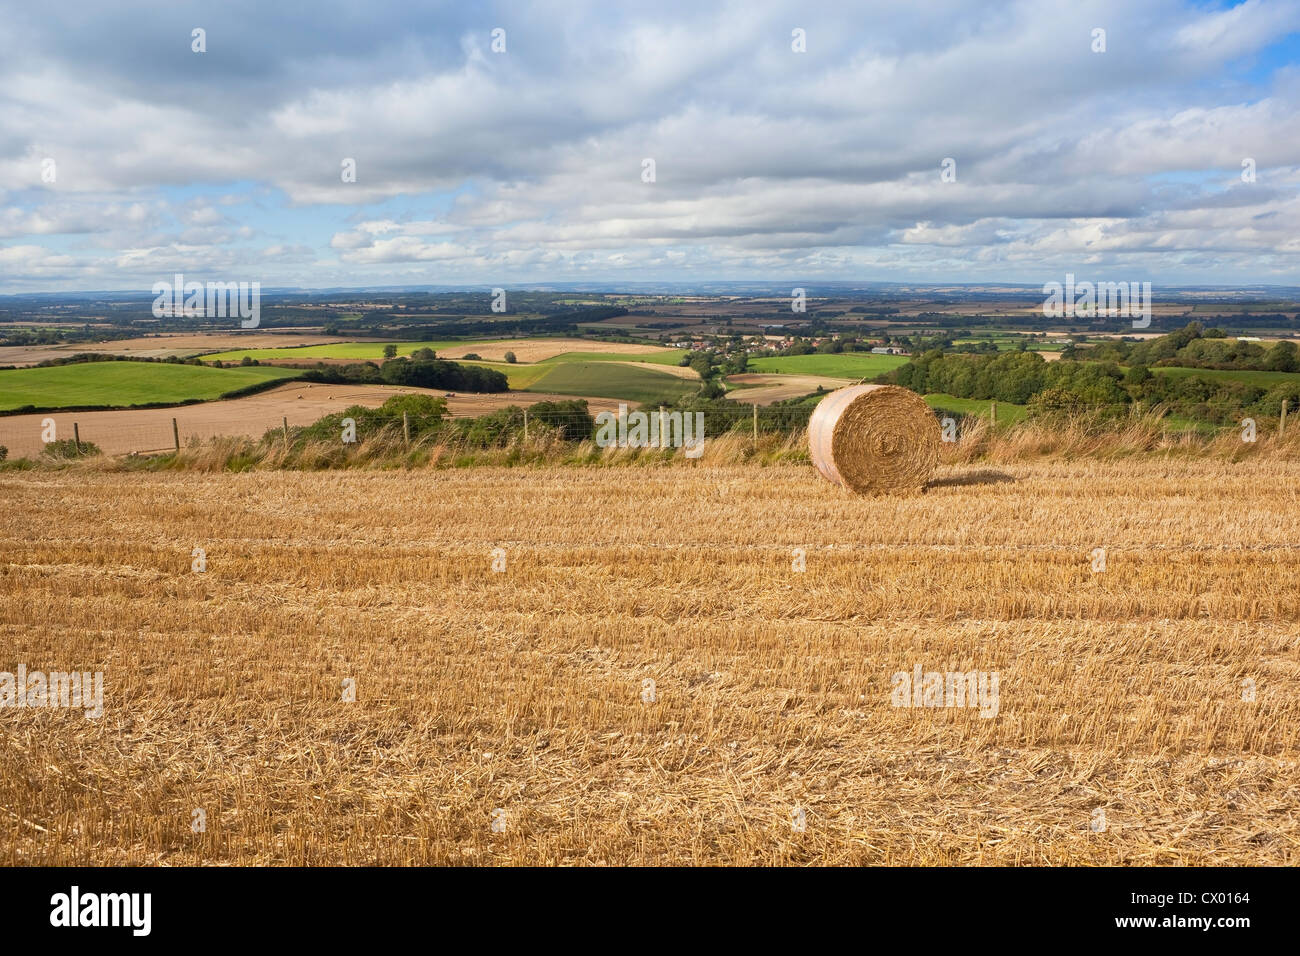 Nella tarda estate del paesaggio inglese con cielo nuvoloso oltre i modelli e le texture del patchwork campi del Yorkshire wolds Foto Stock